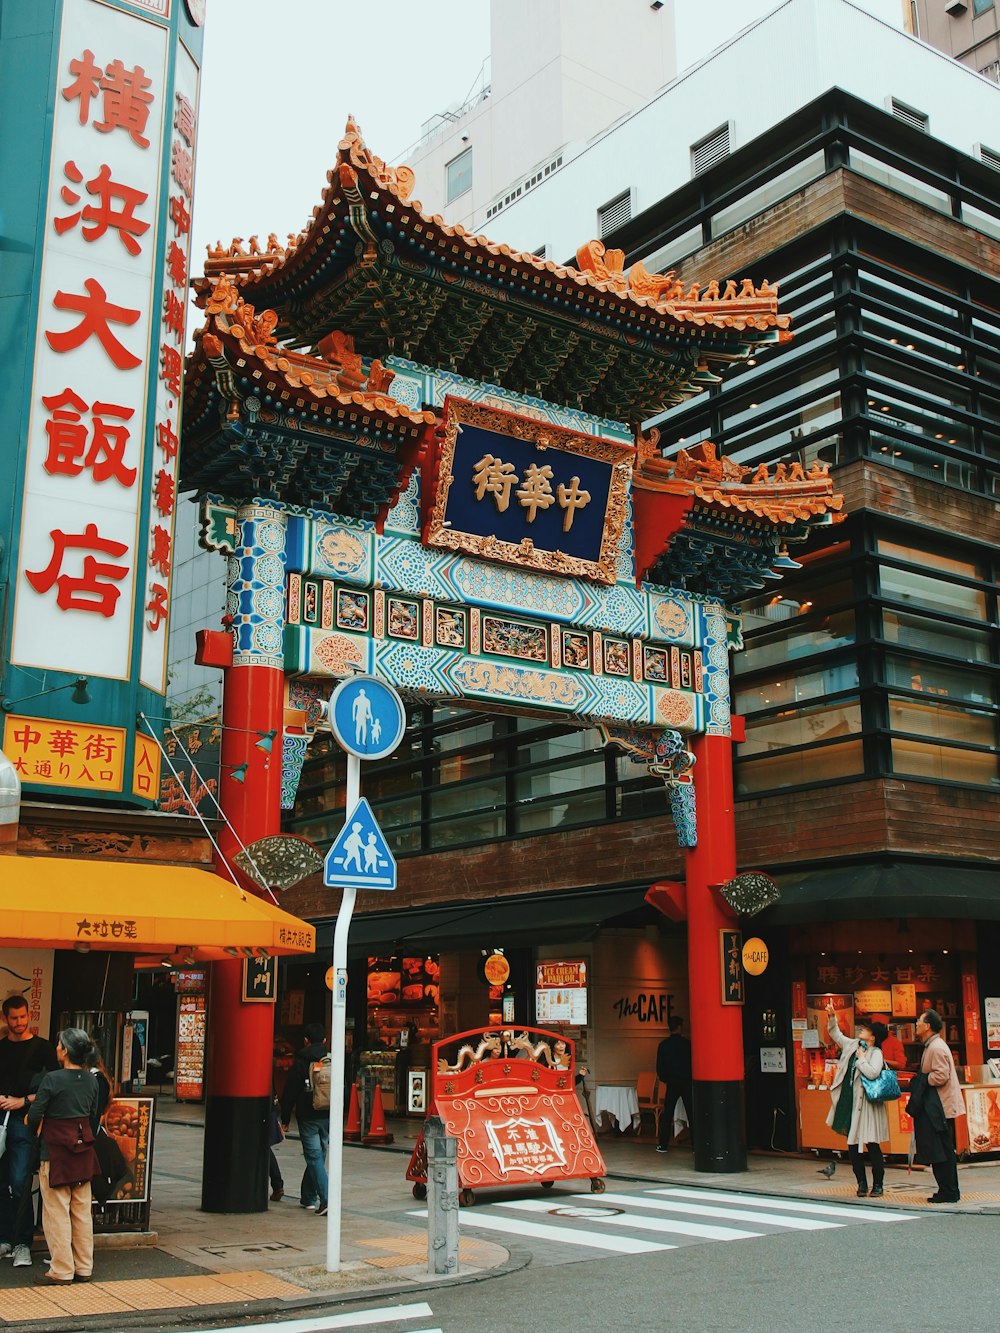 kanji signage